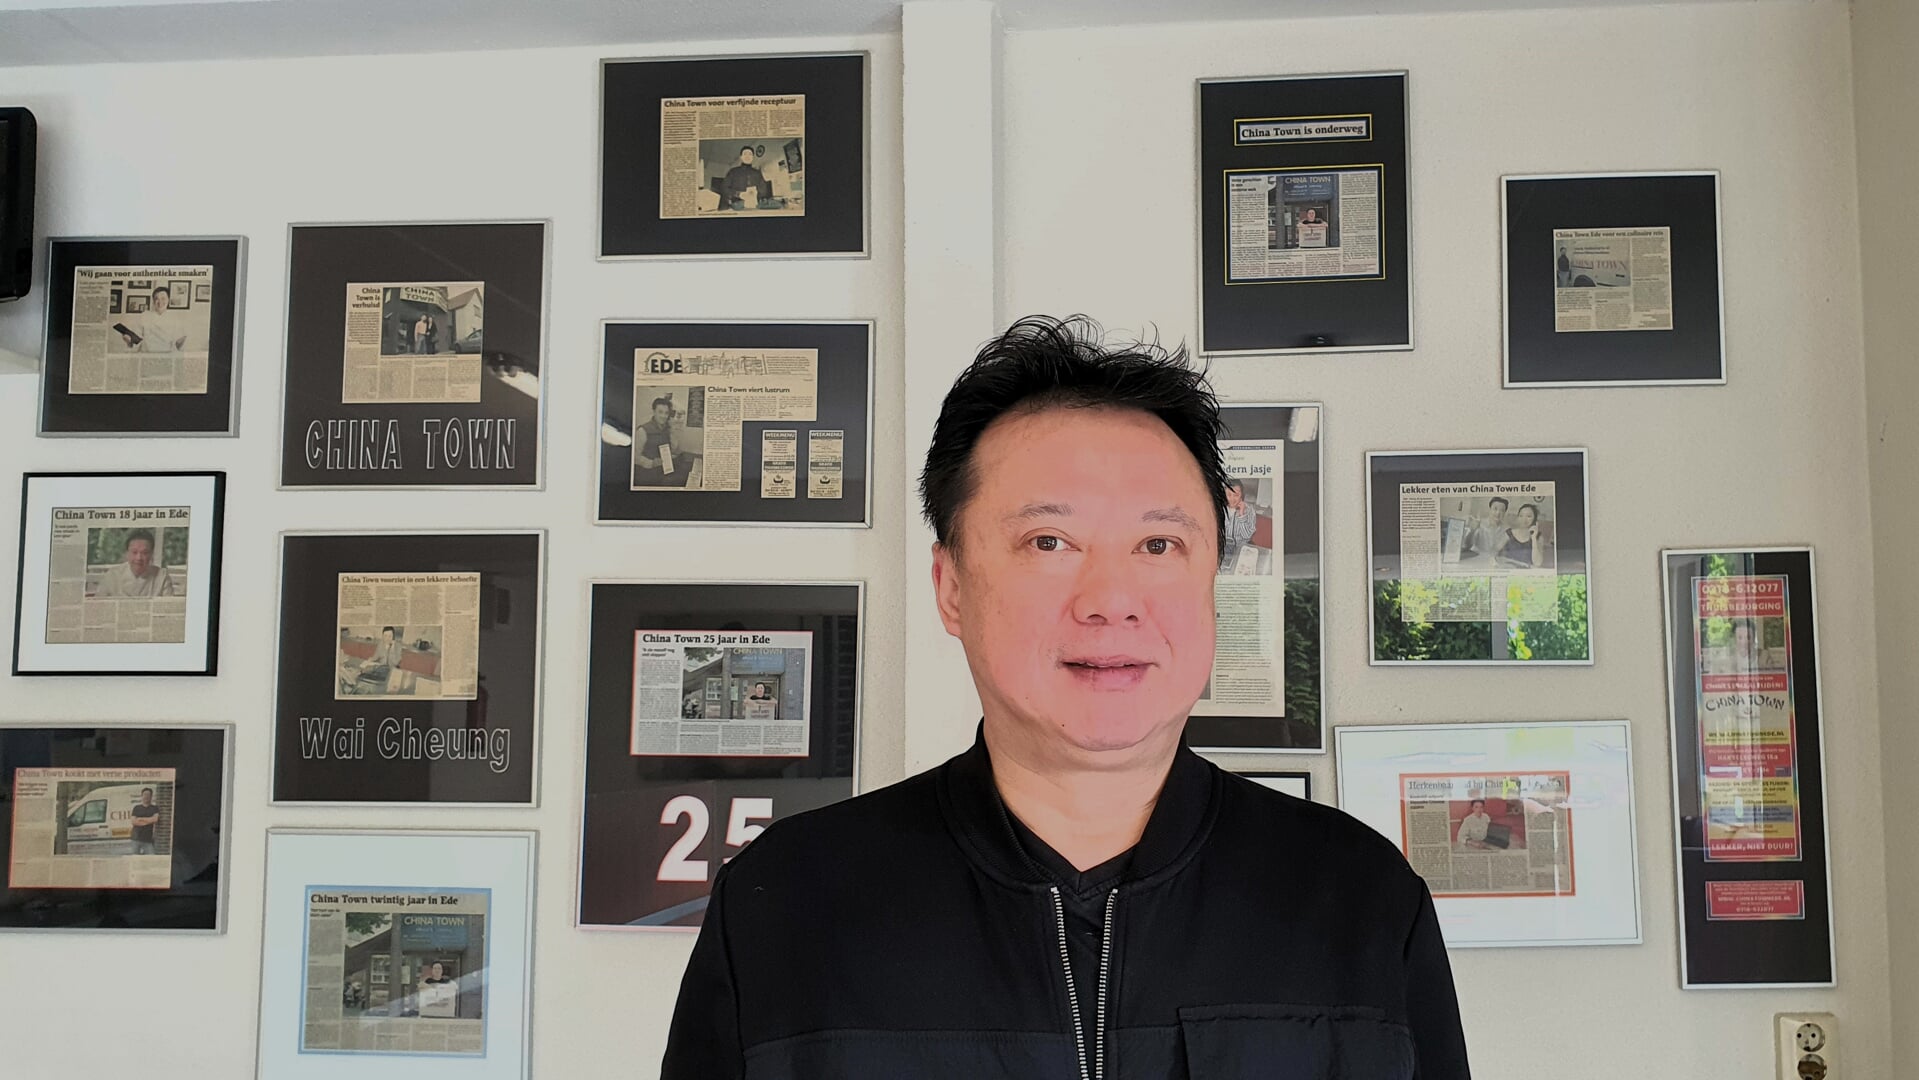 Wai Cheung voor de muur met artikelen over zijn zaak.